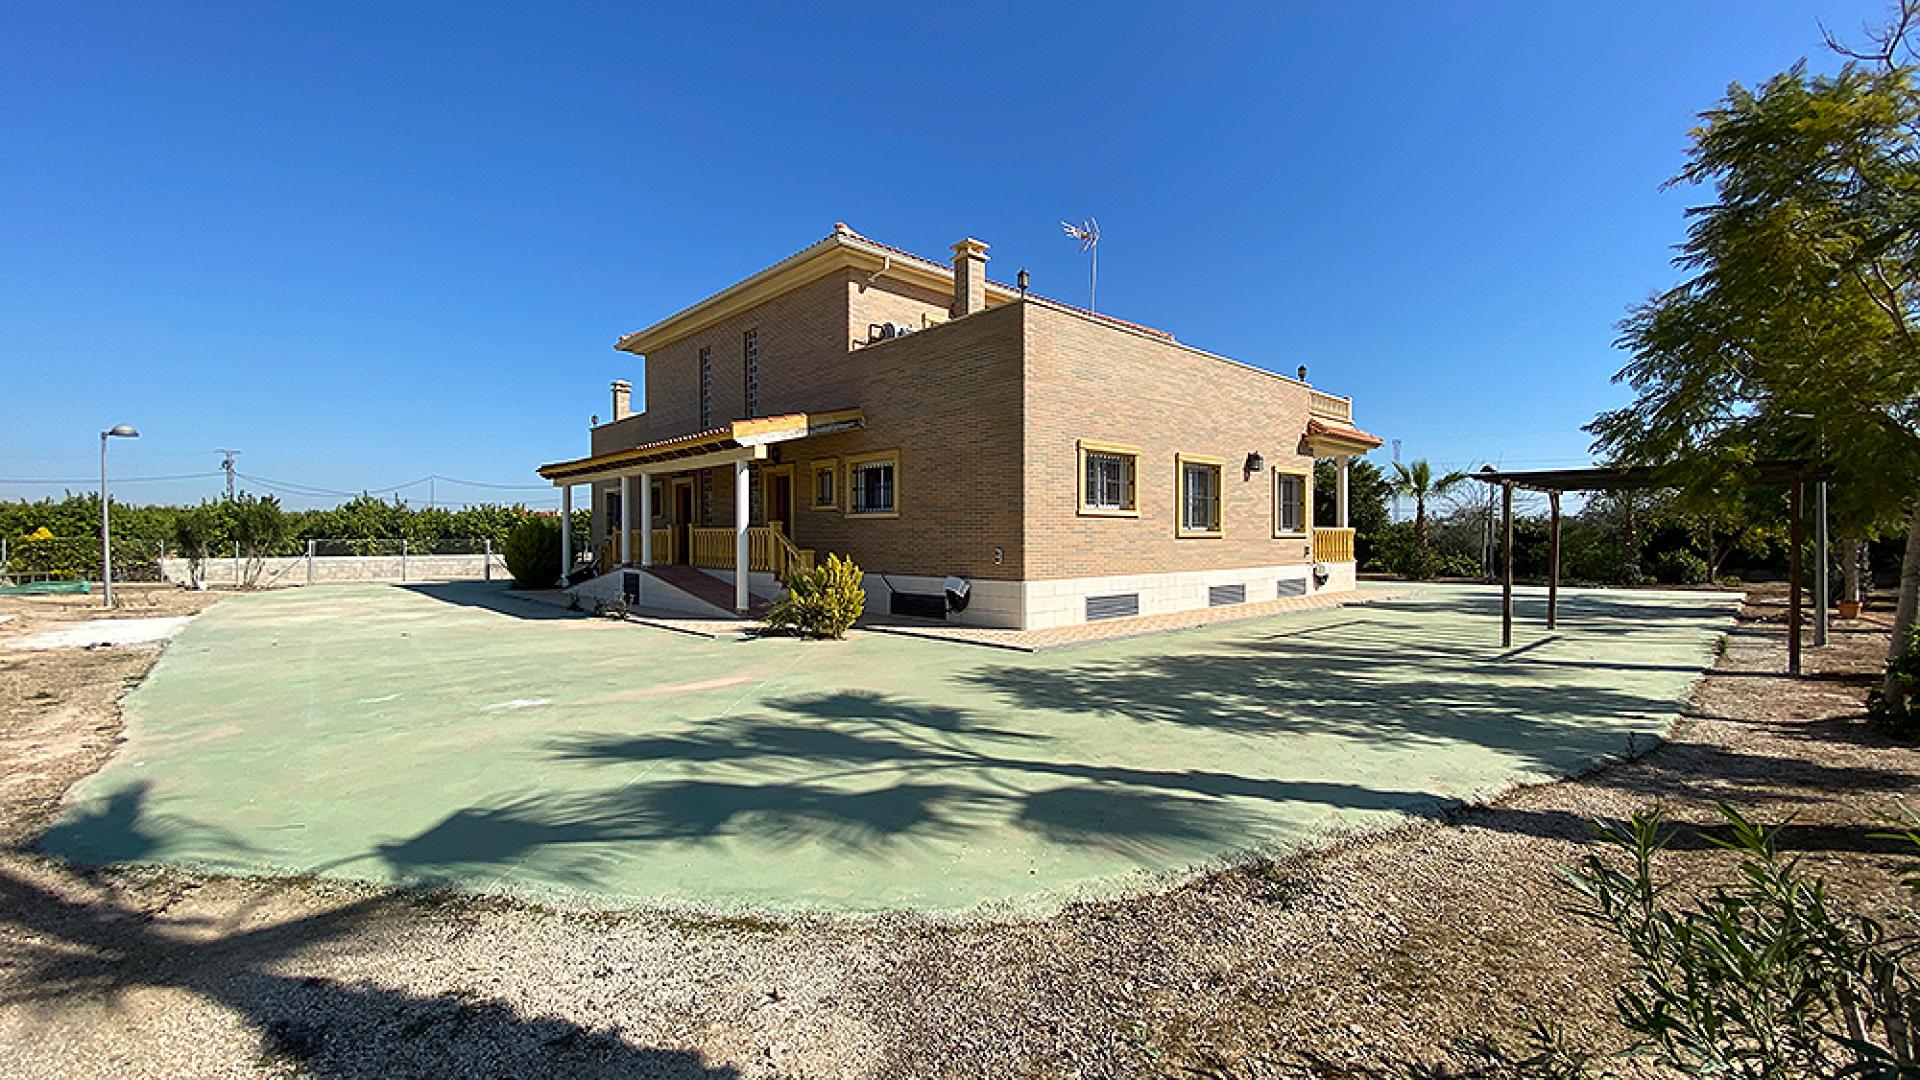  Los Montesinos, finca de 17.000 m², gran villa de 6 dormitorios con piscina privada 